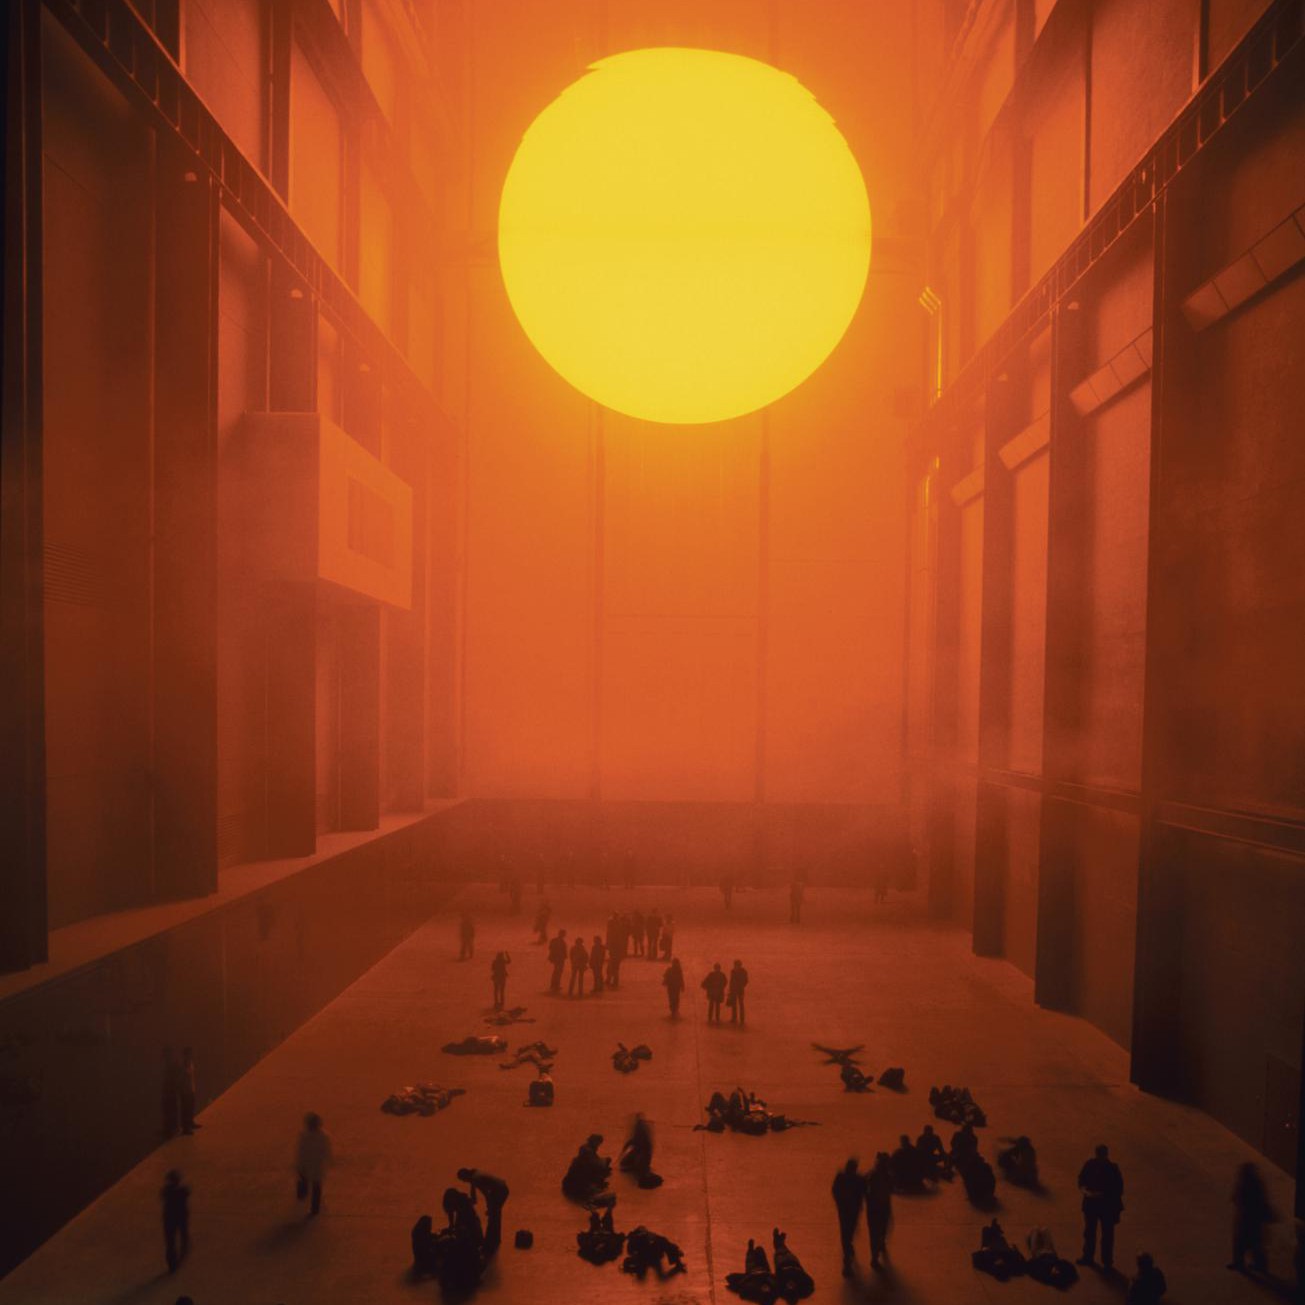 Sun by: Olafur Eliasson